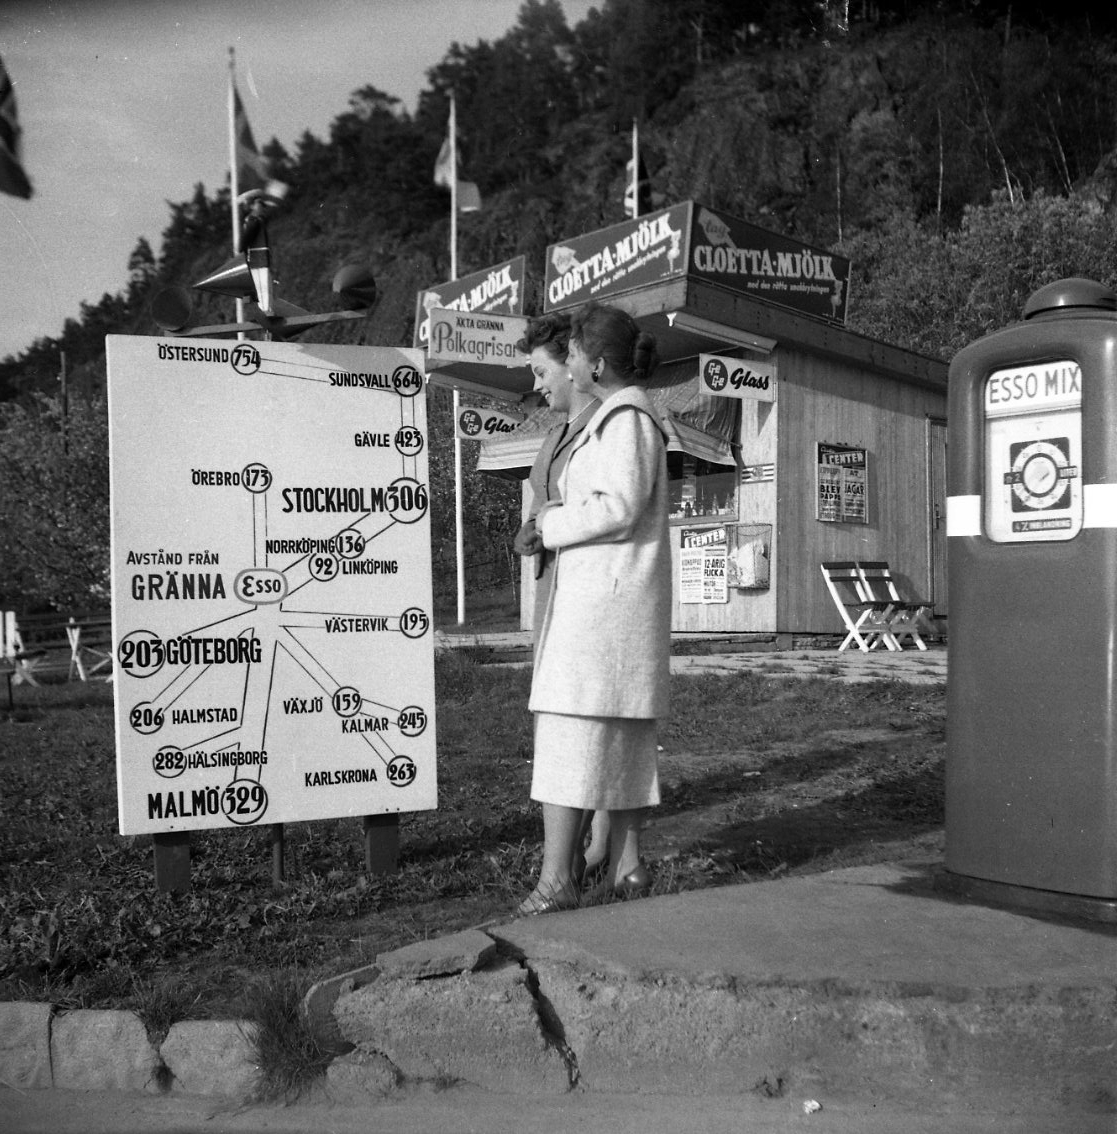 Två kvinnor i kappor står och tittar på en vägskylt vid Esso-stationen i Gränna som visar vägar och avstånd till bland annat Örebro och Stockholm. Bakom dem en liten kioskbyggnad med reklam och skyltar för "Ge Ge Glass", "Cloetta-Mjölk" och "Äkta Gränna Polkarisar". Till höger en bensinpump "Esso Mix.